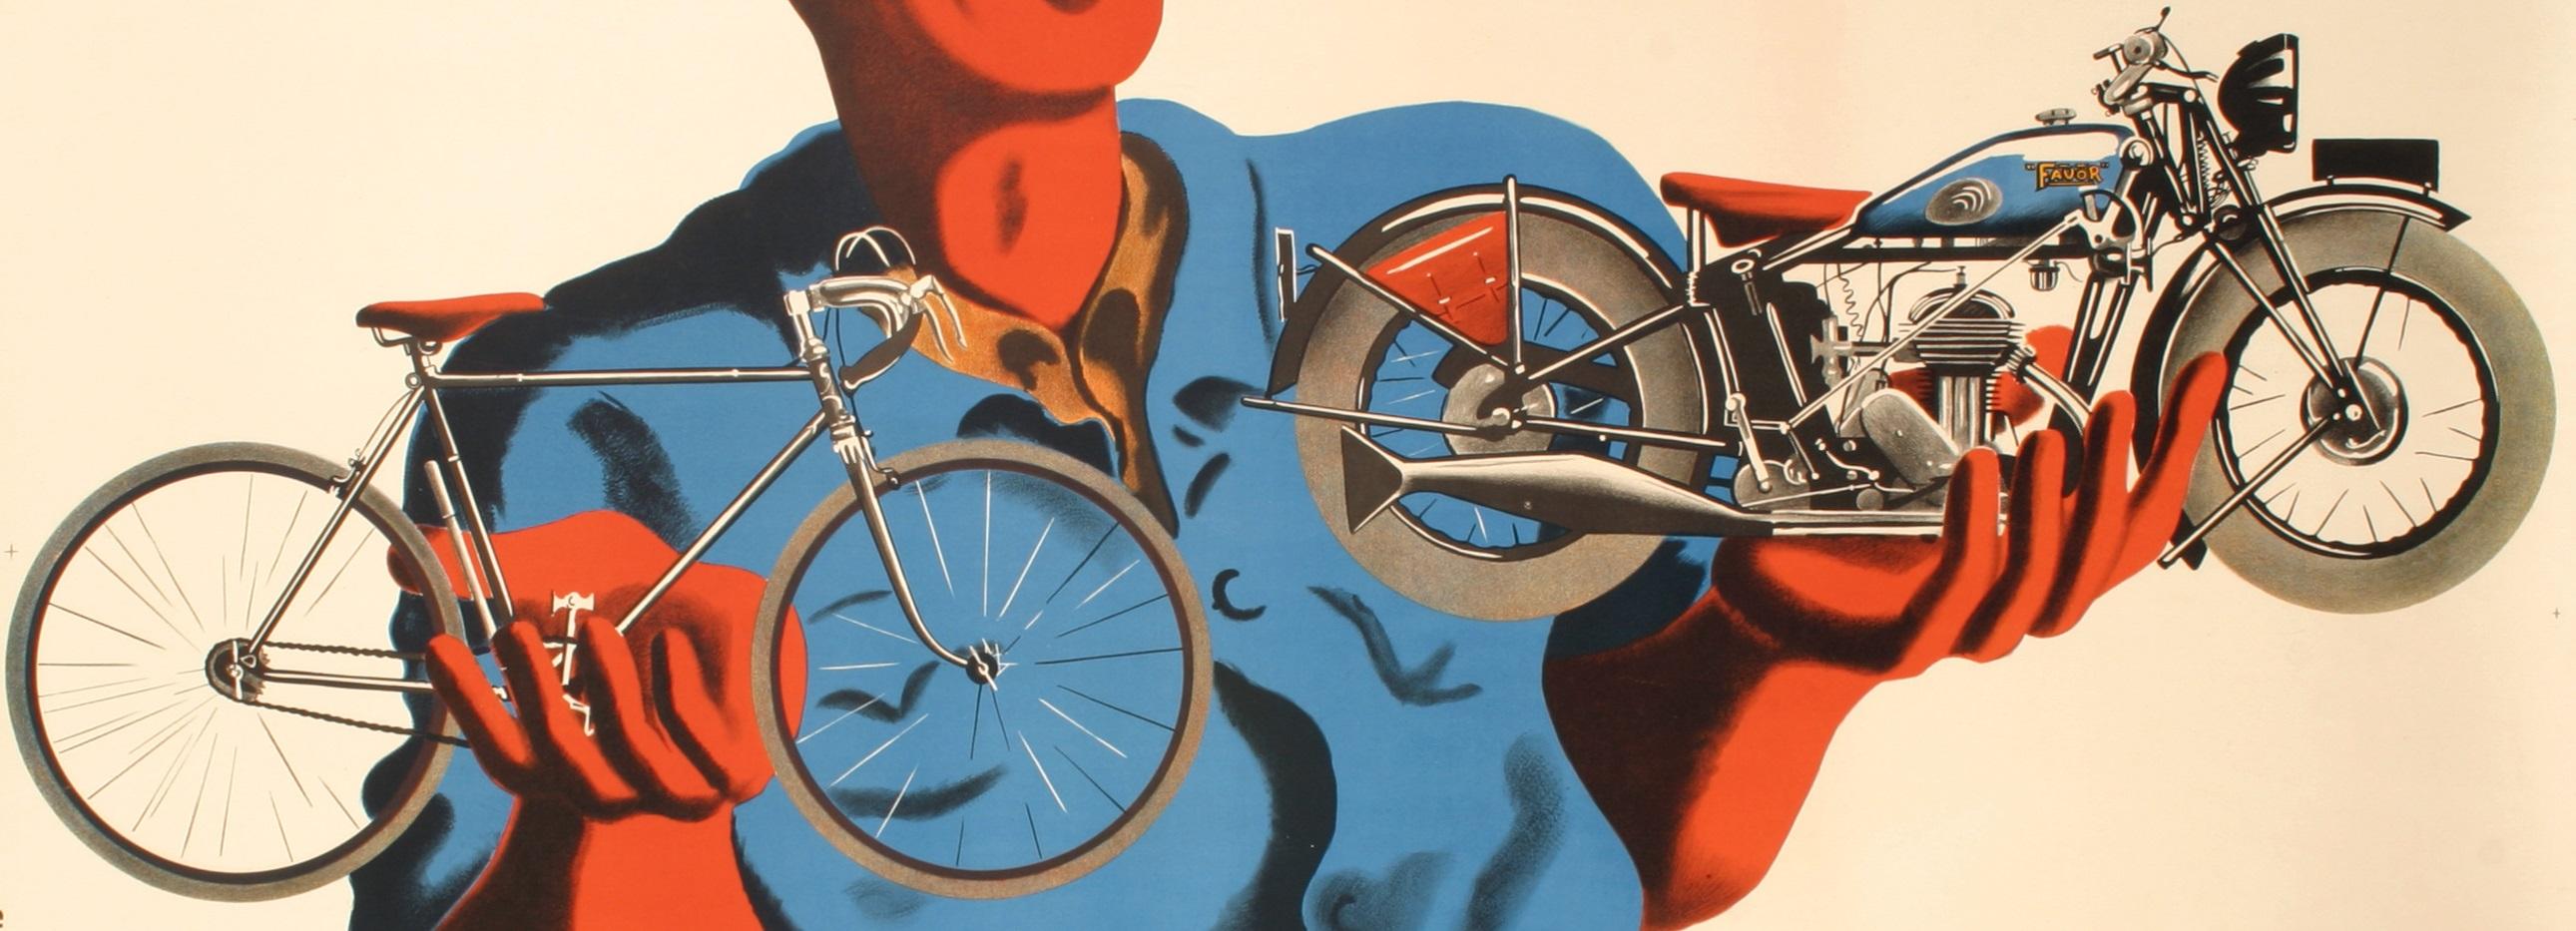 Original Art Deco Poster created by Bellenger for Cycle Favor in 1937.

Artist: Bellenger Jacques et Pierre
Title : Favor - De la belle mécanique ! Cycles - Motos
Date: 1937
Size: 23.6 x 15 in / 60 x 38 cm
Printer : Etbts de la Vasselais, 36 rue des